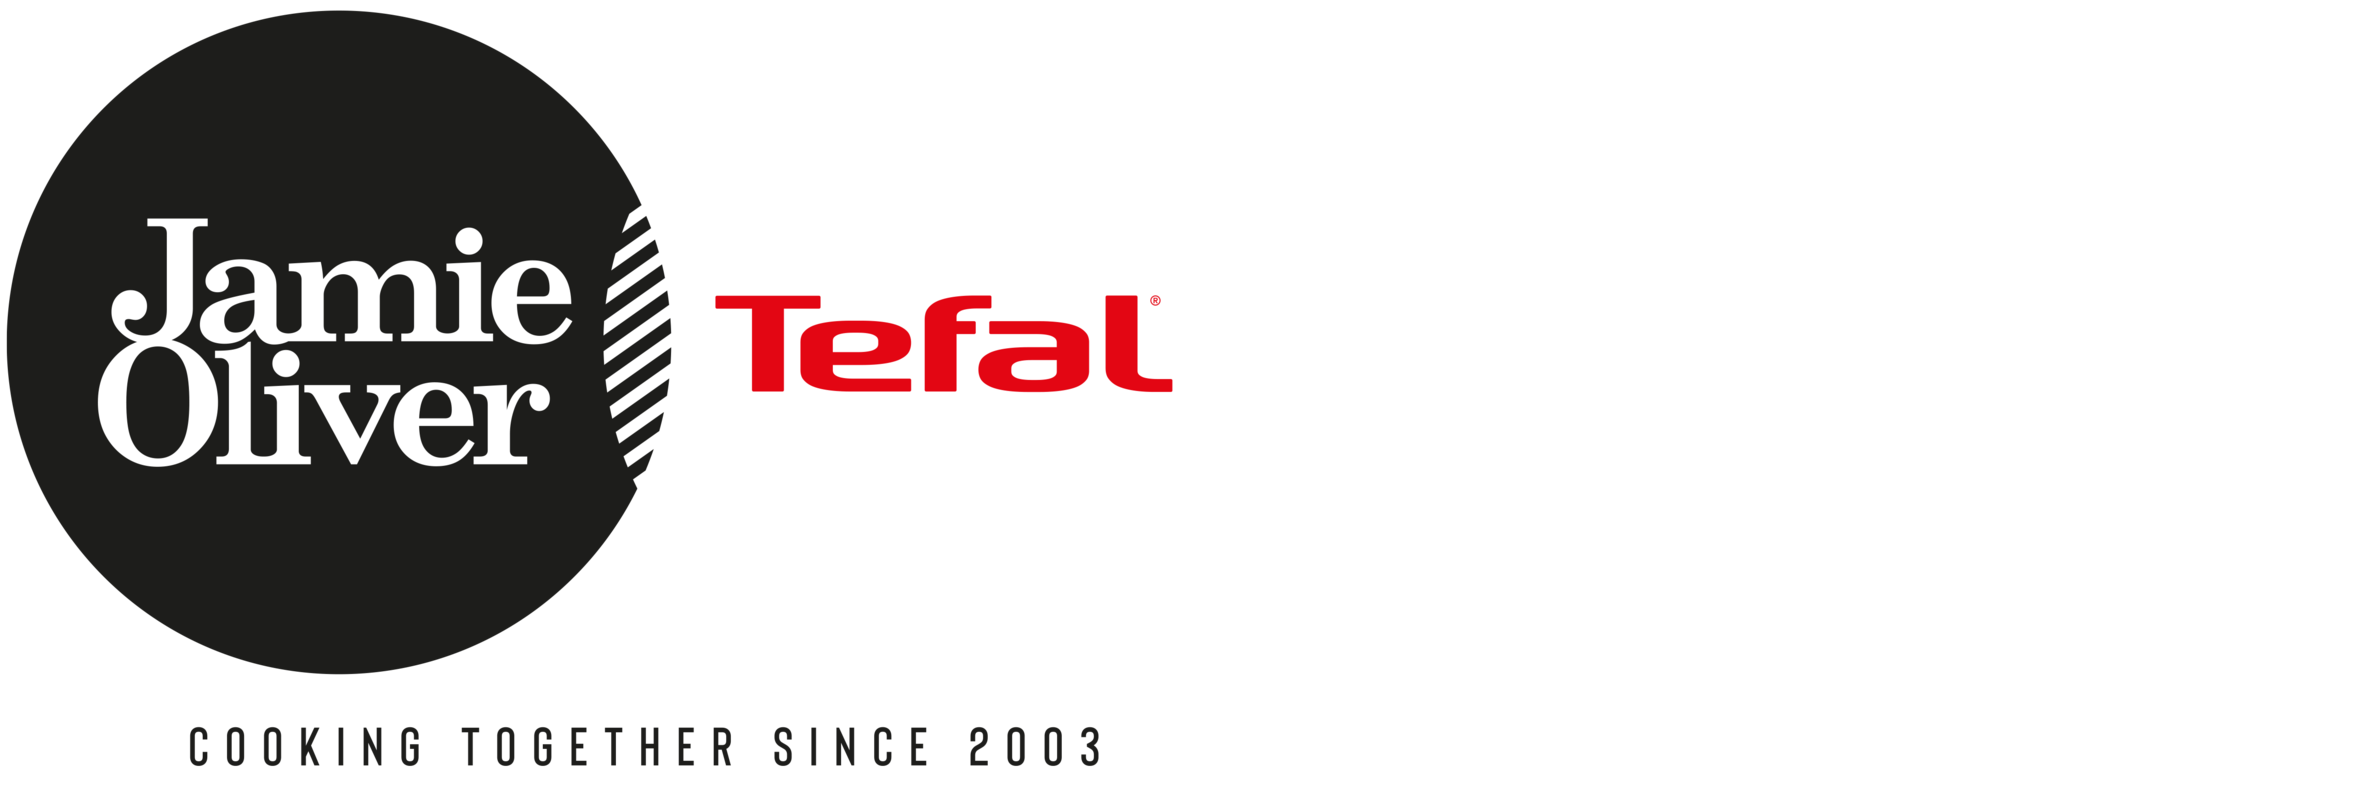 Tefal Jamie Oliver Logointegration